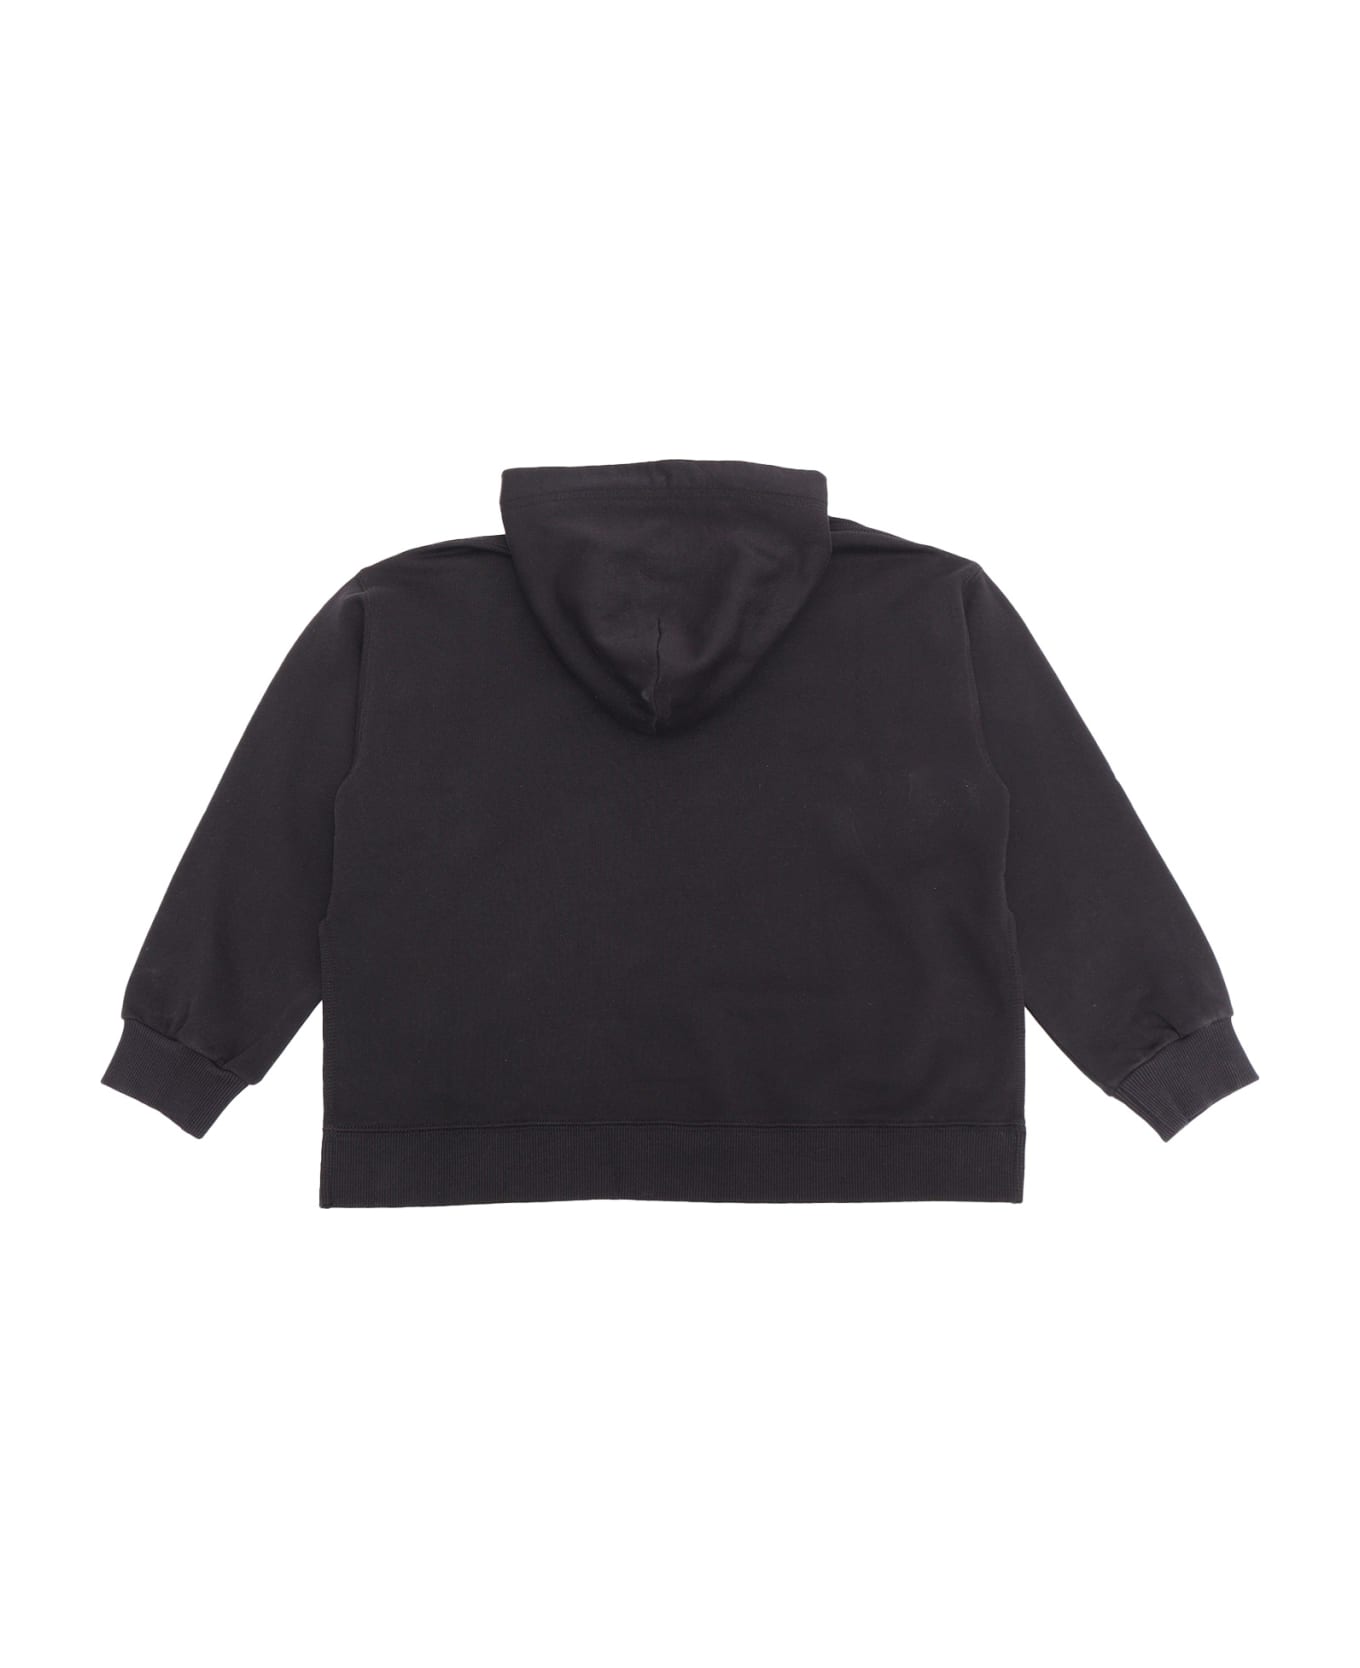 MM6 Maison Margiela Black Sweatshirt With Logo - BLACK